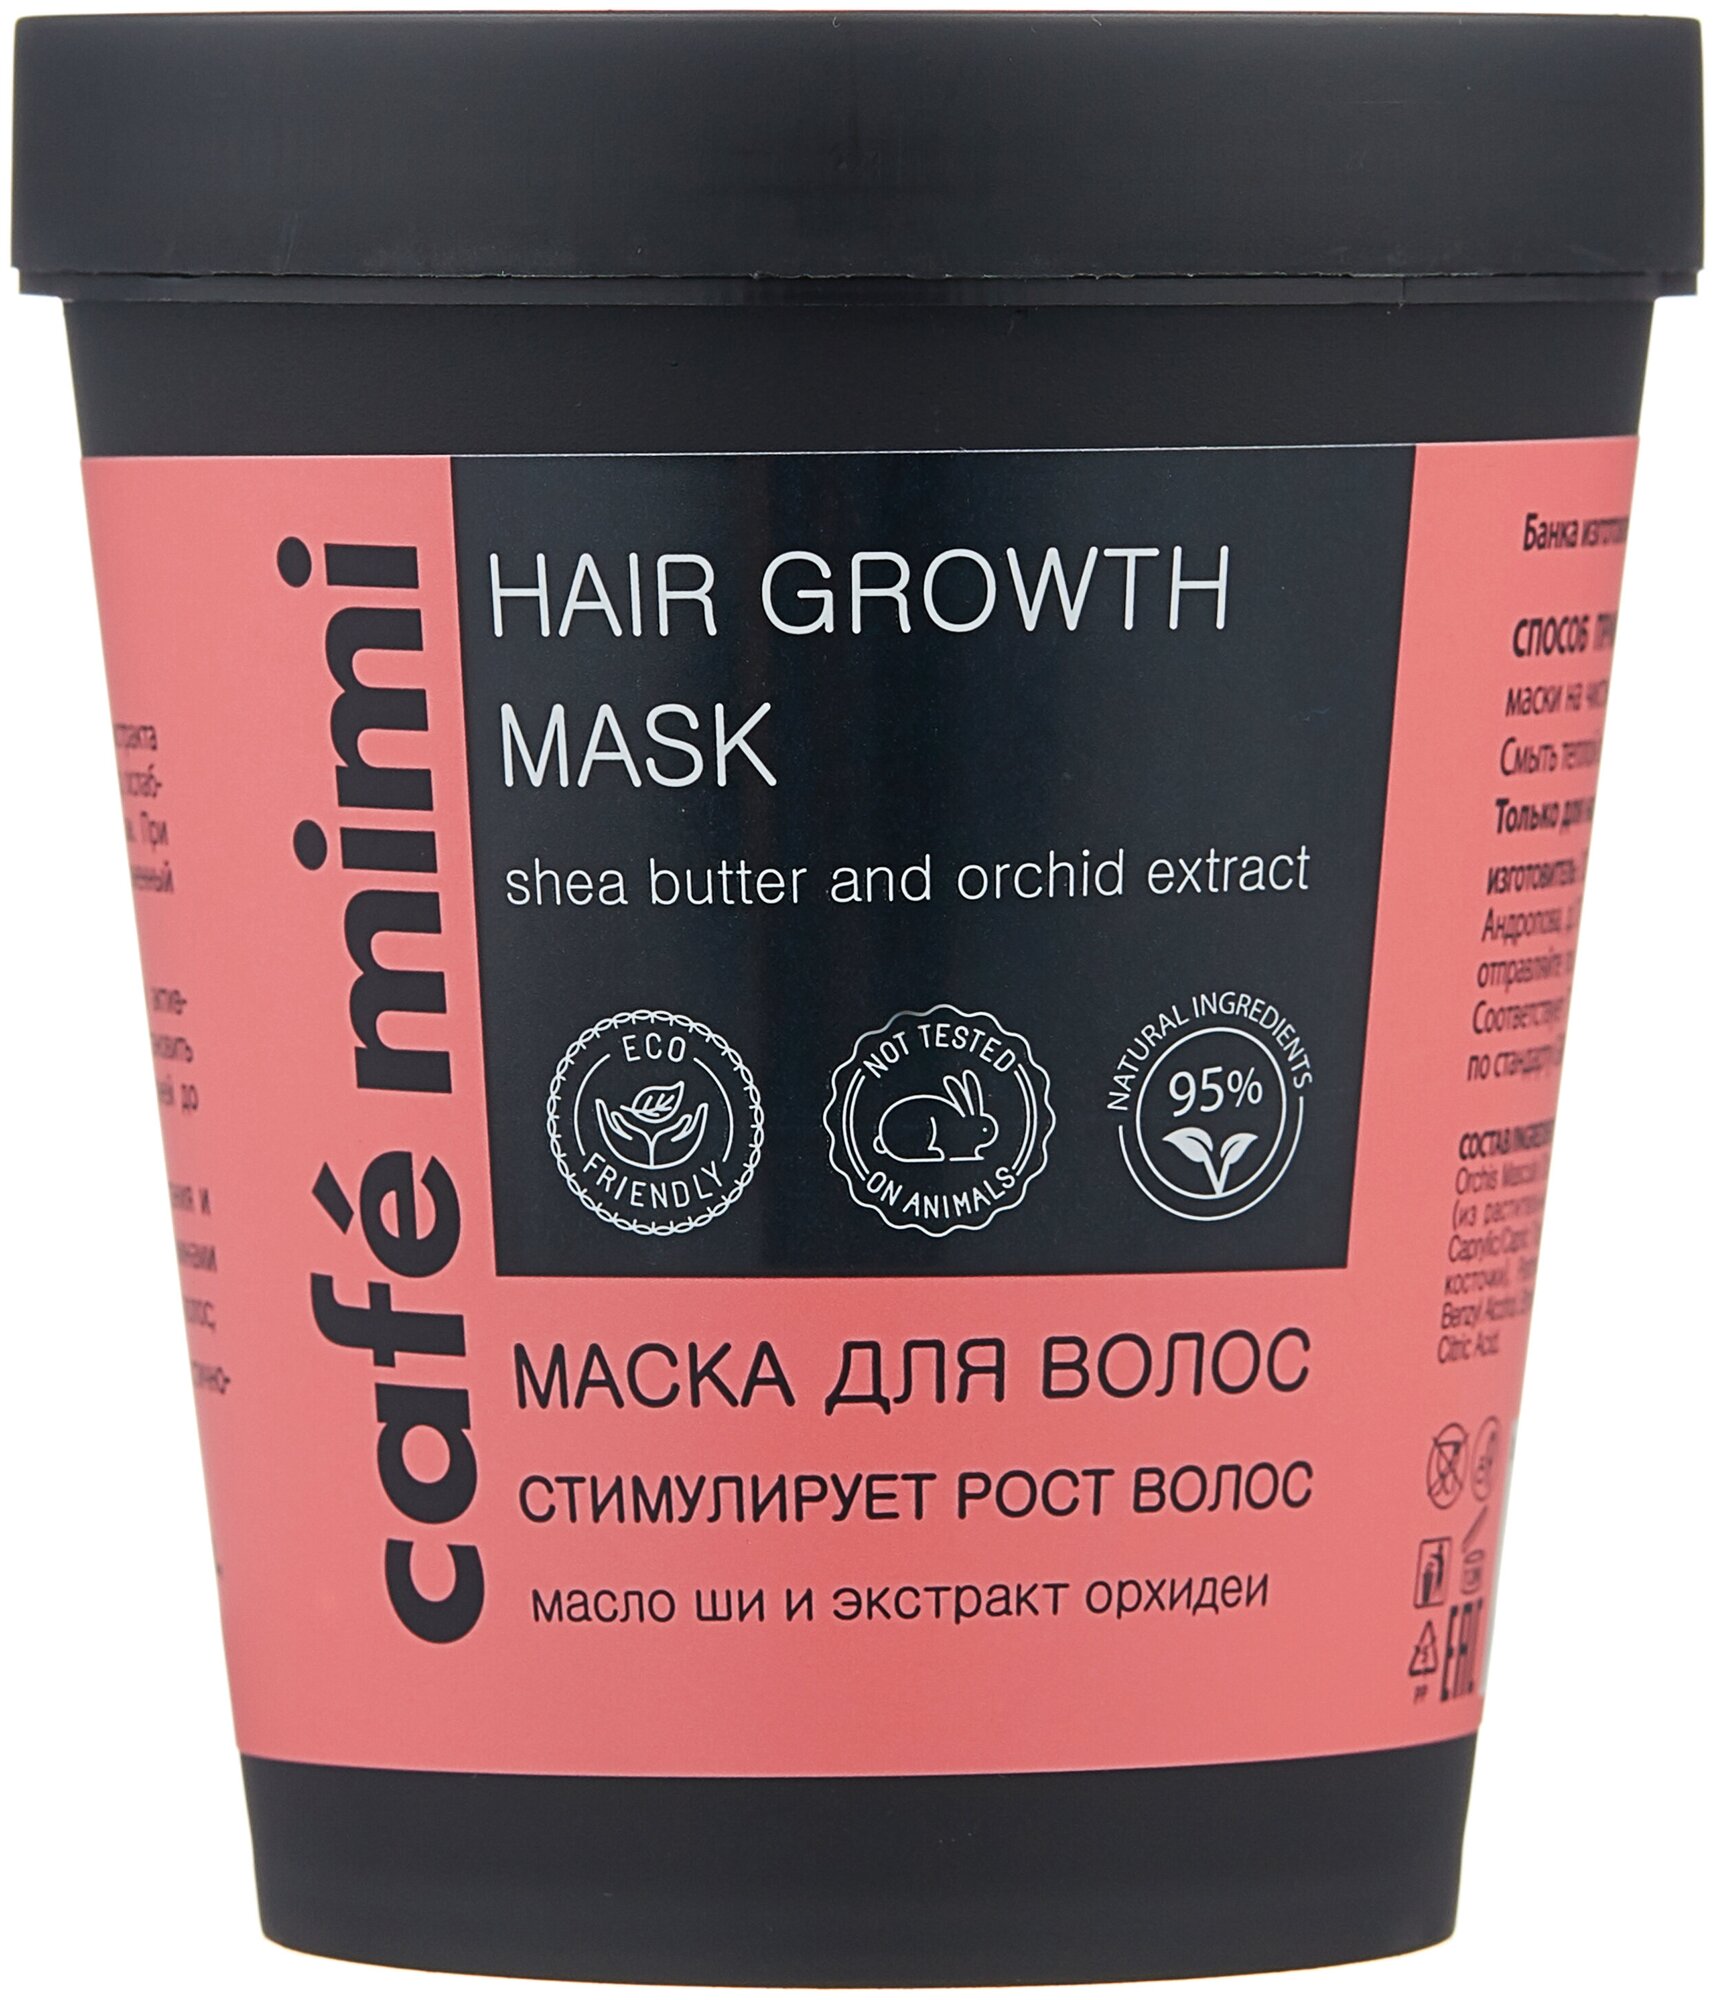 Cafe mimi Маска для волос Стимулирует рост волос 220 мл